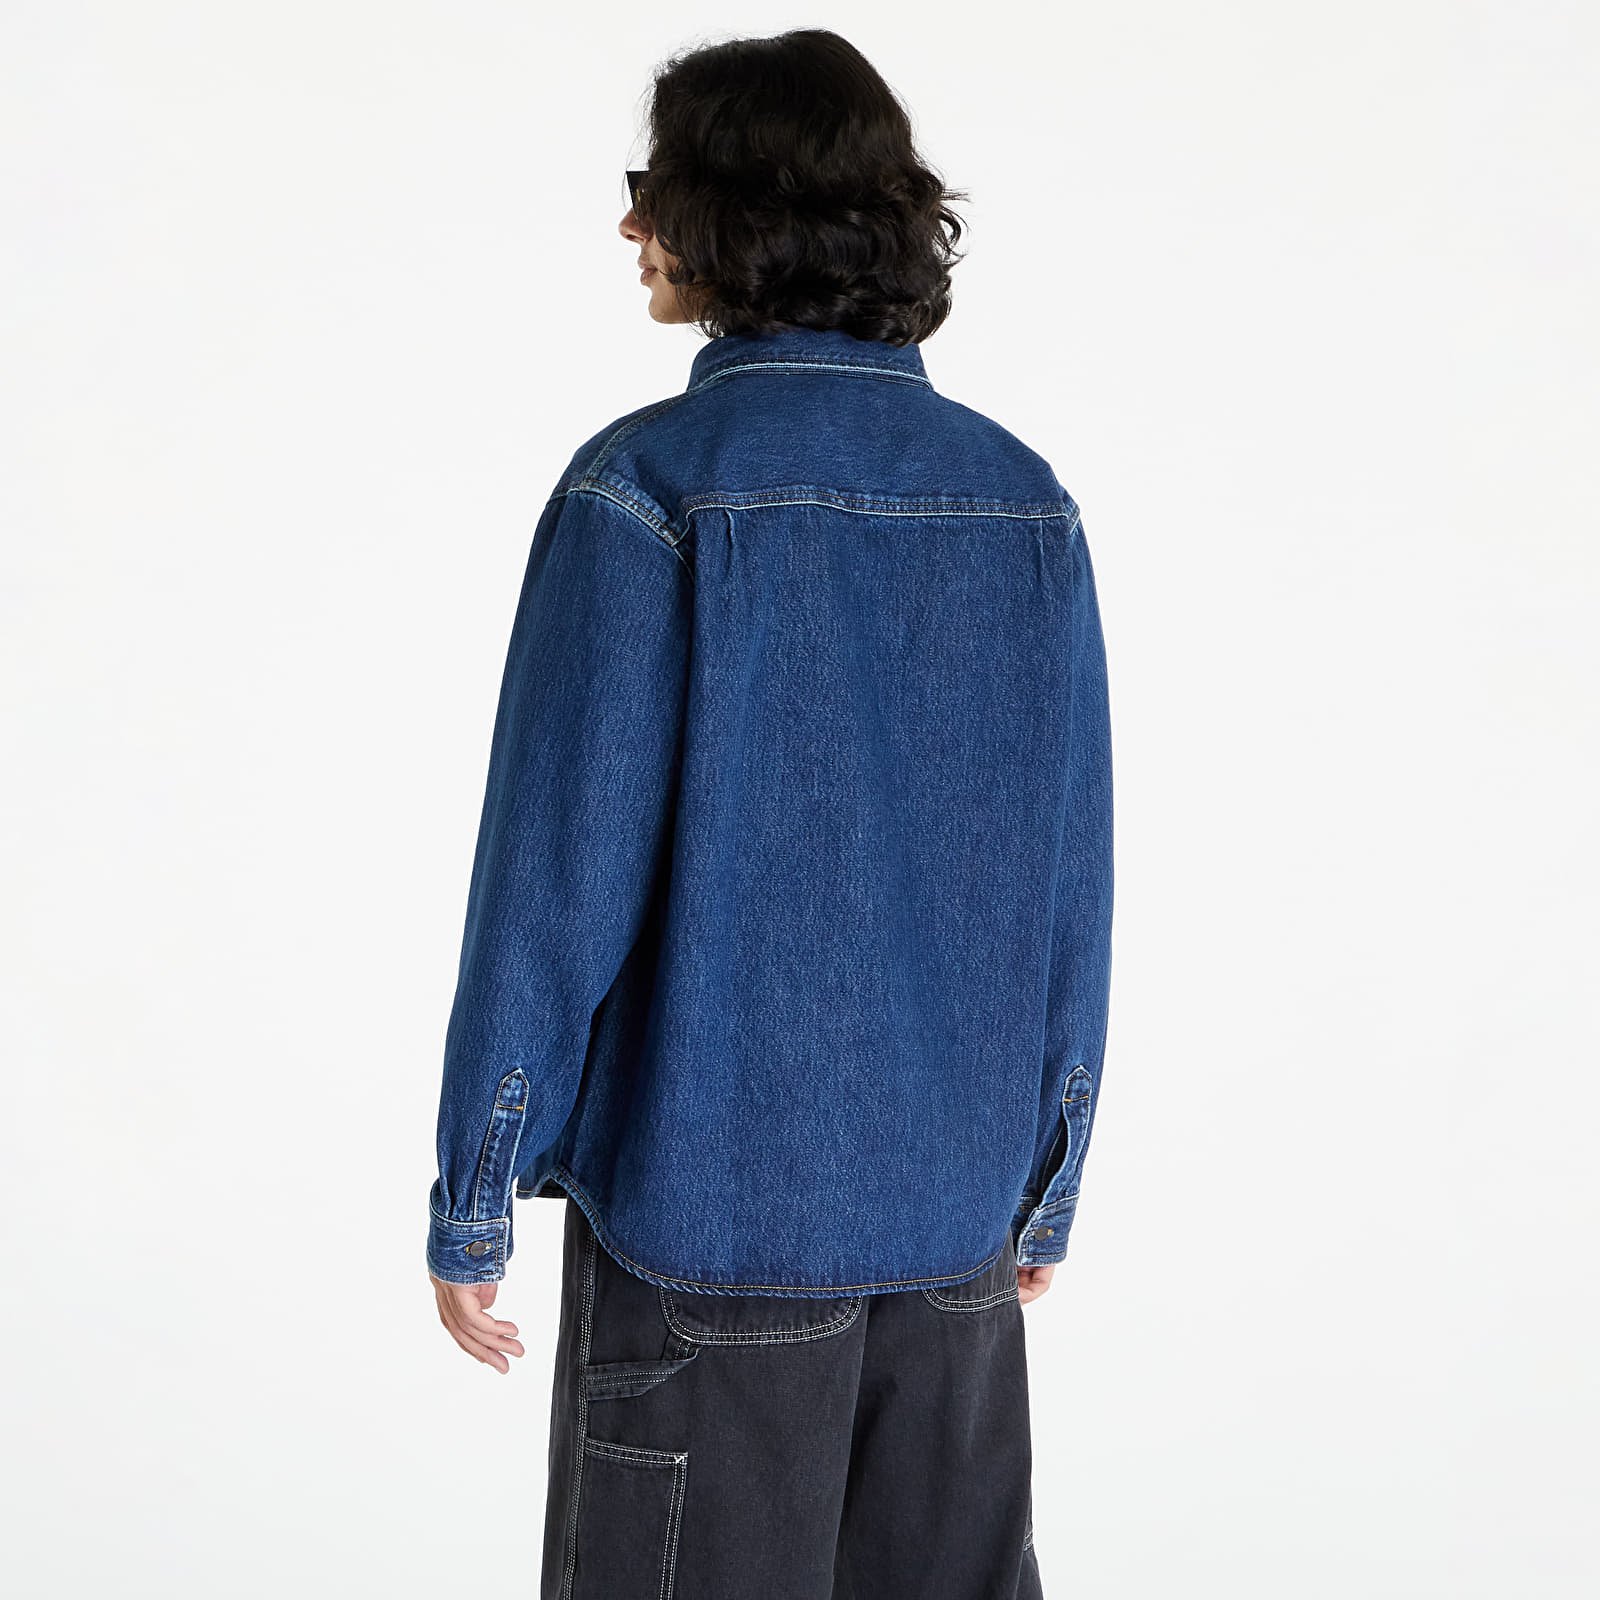 Manny Shirt Jacket "Blue Stone Washed"